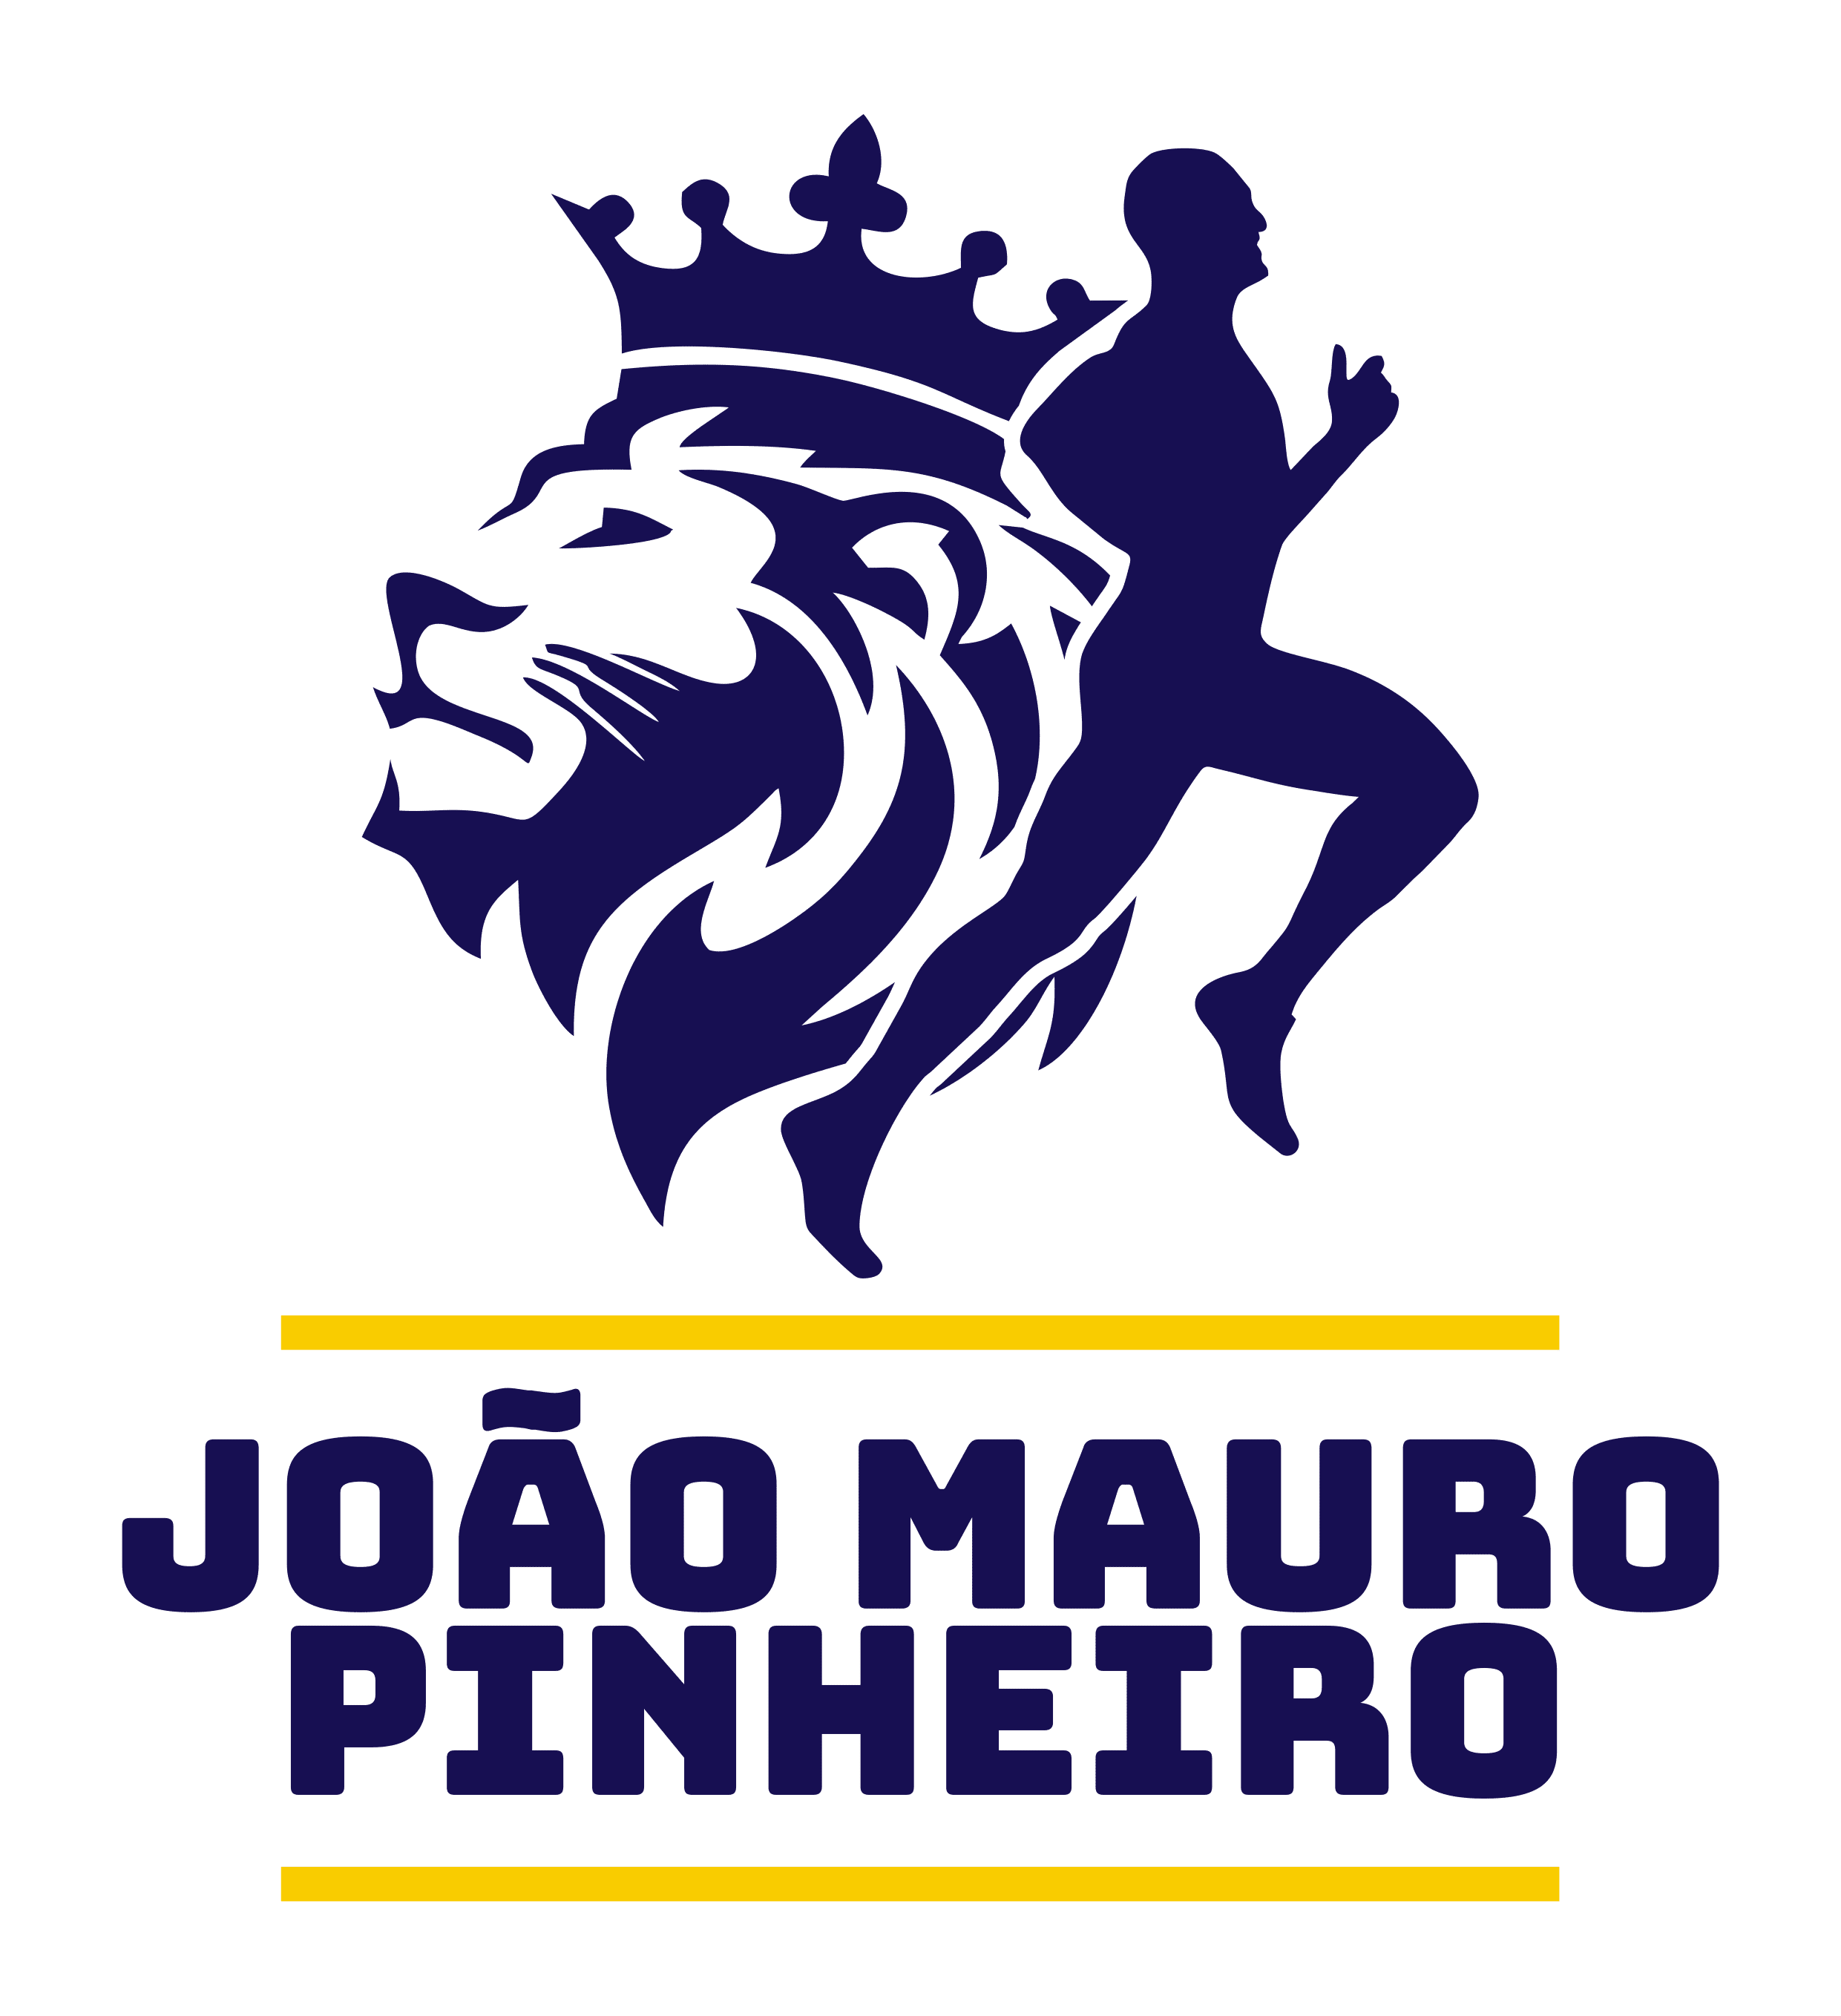 João Mauro Pinheiro